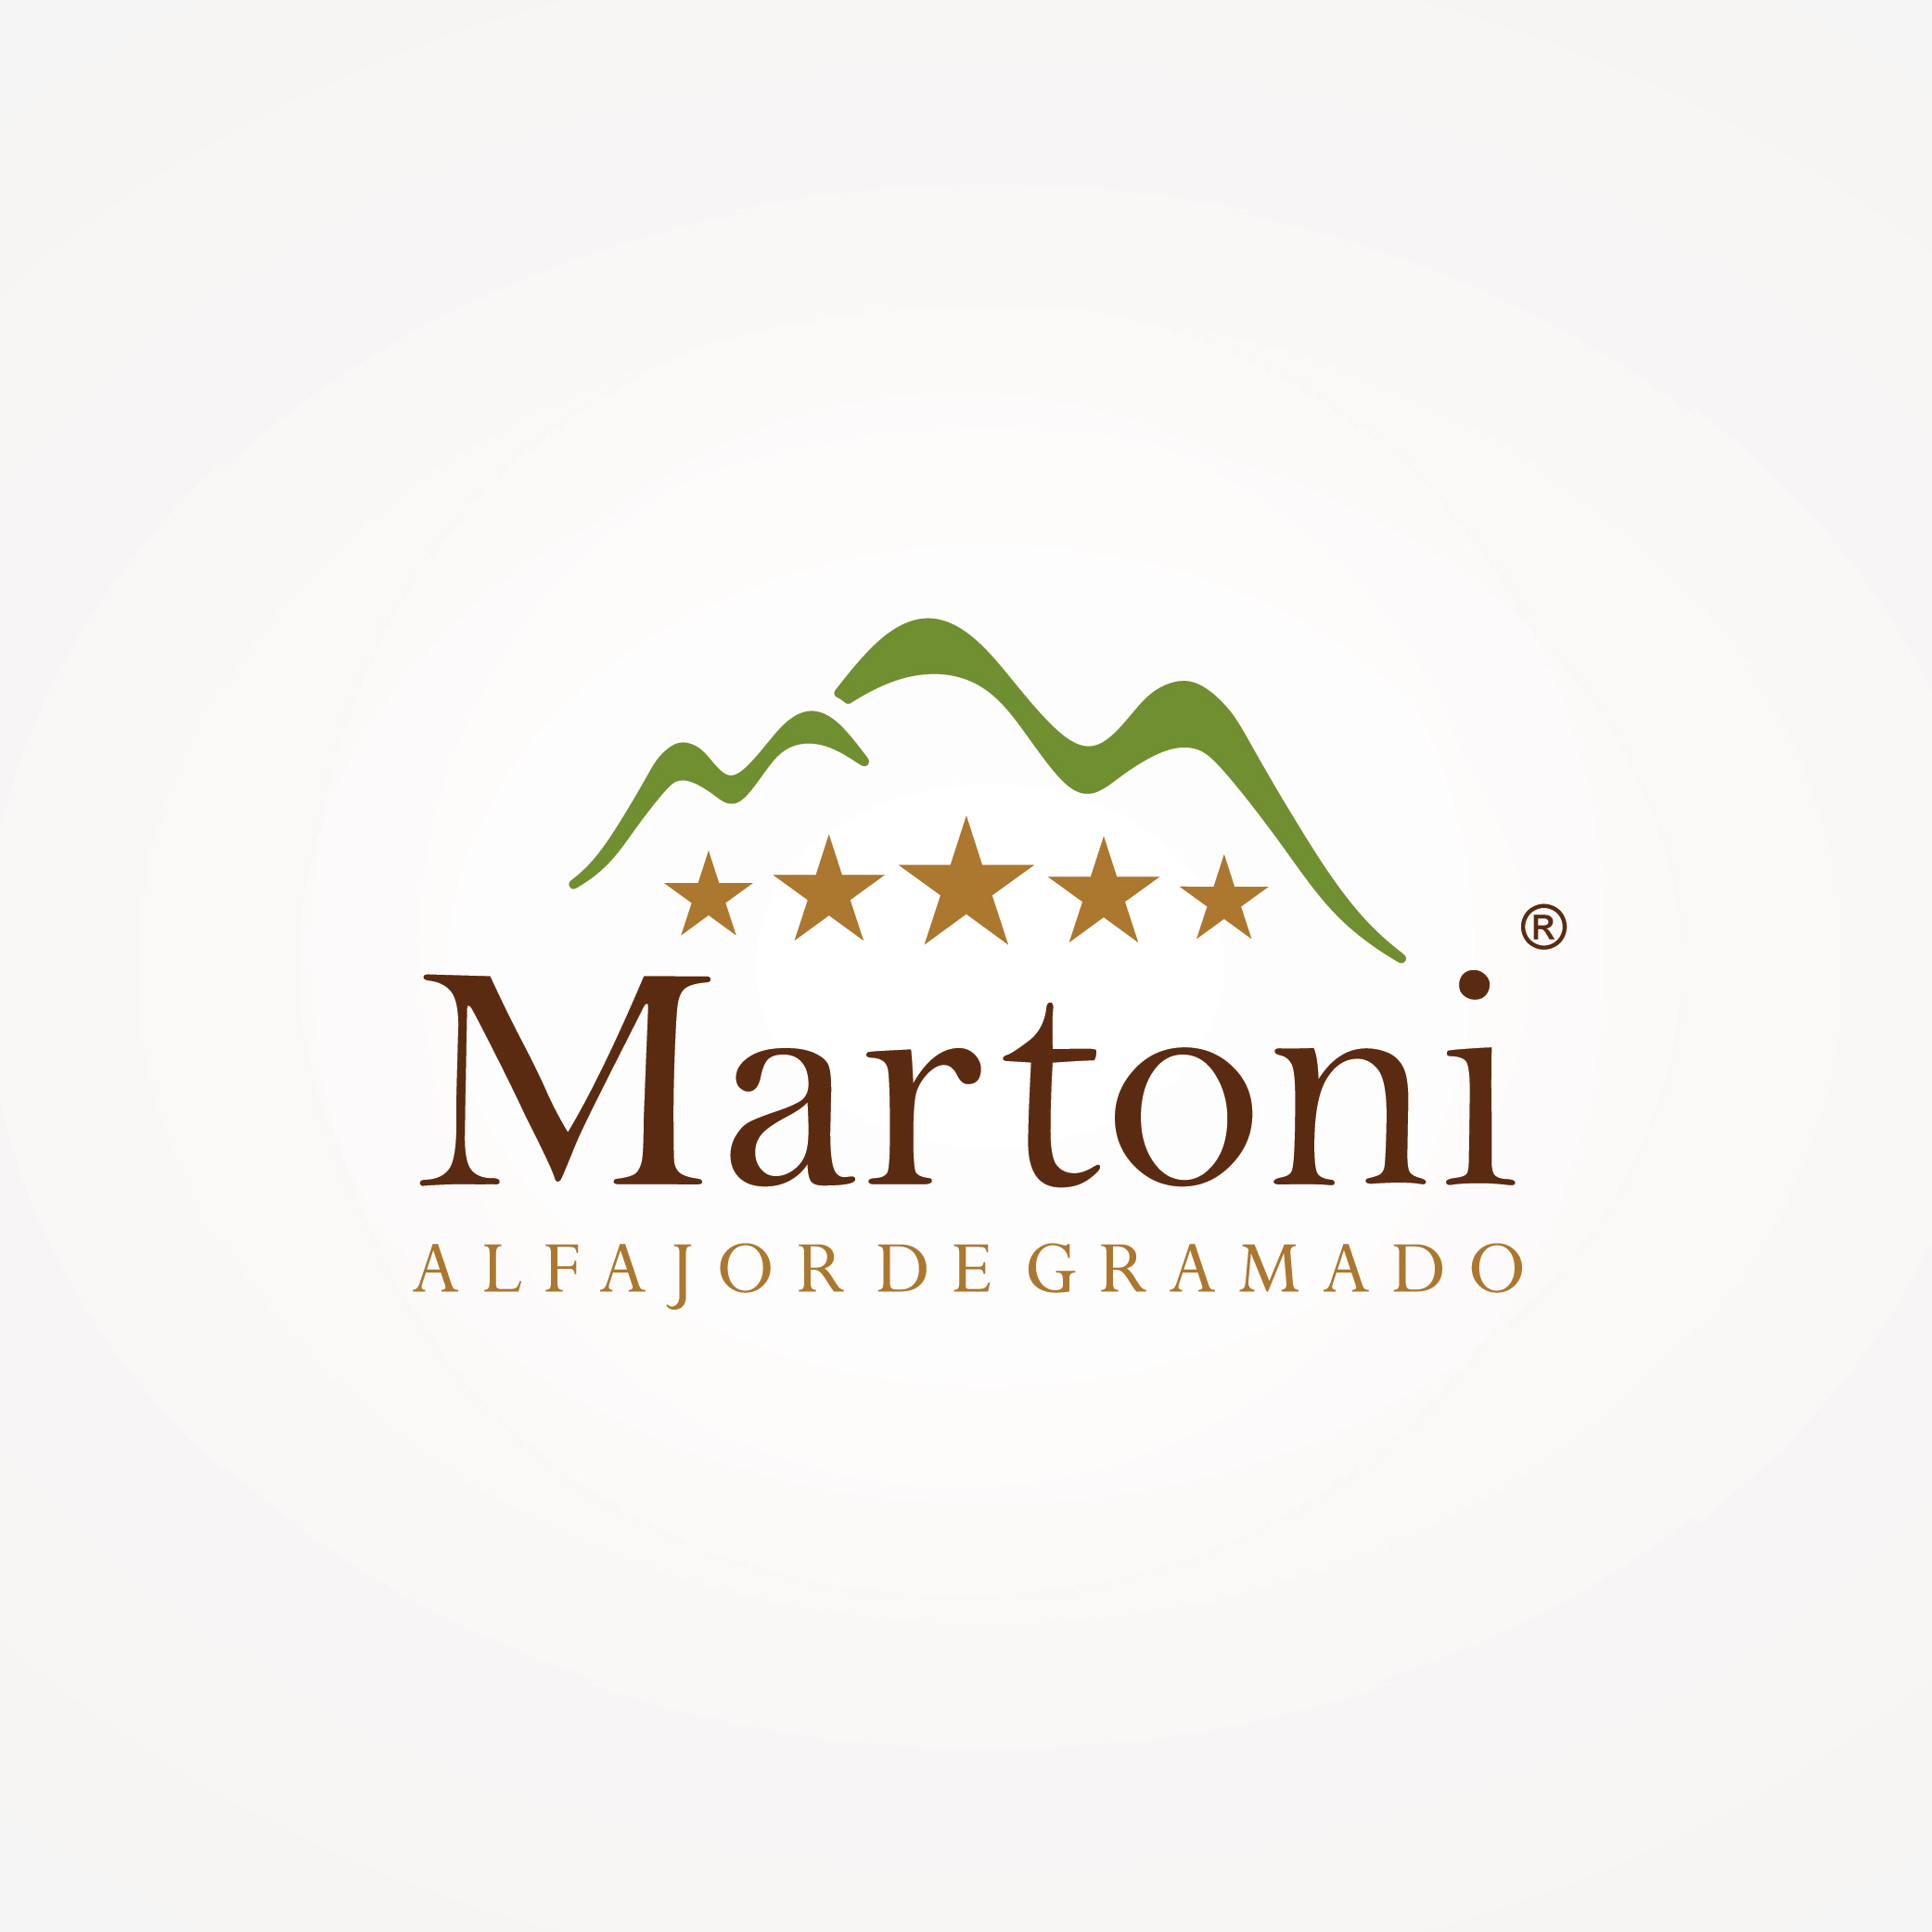 MARTONI ALFAJORES - Gramado & Canela Convention & Visitors Bureau